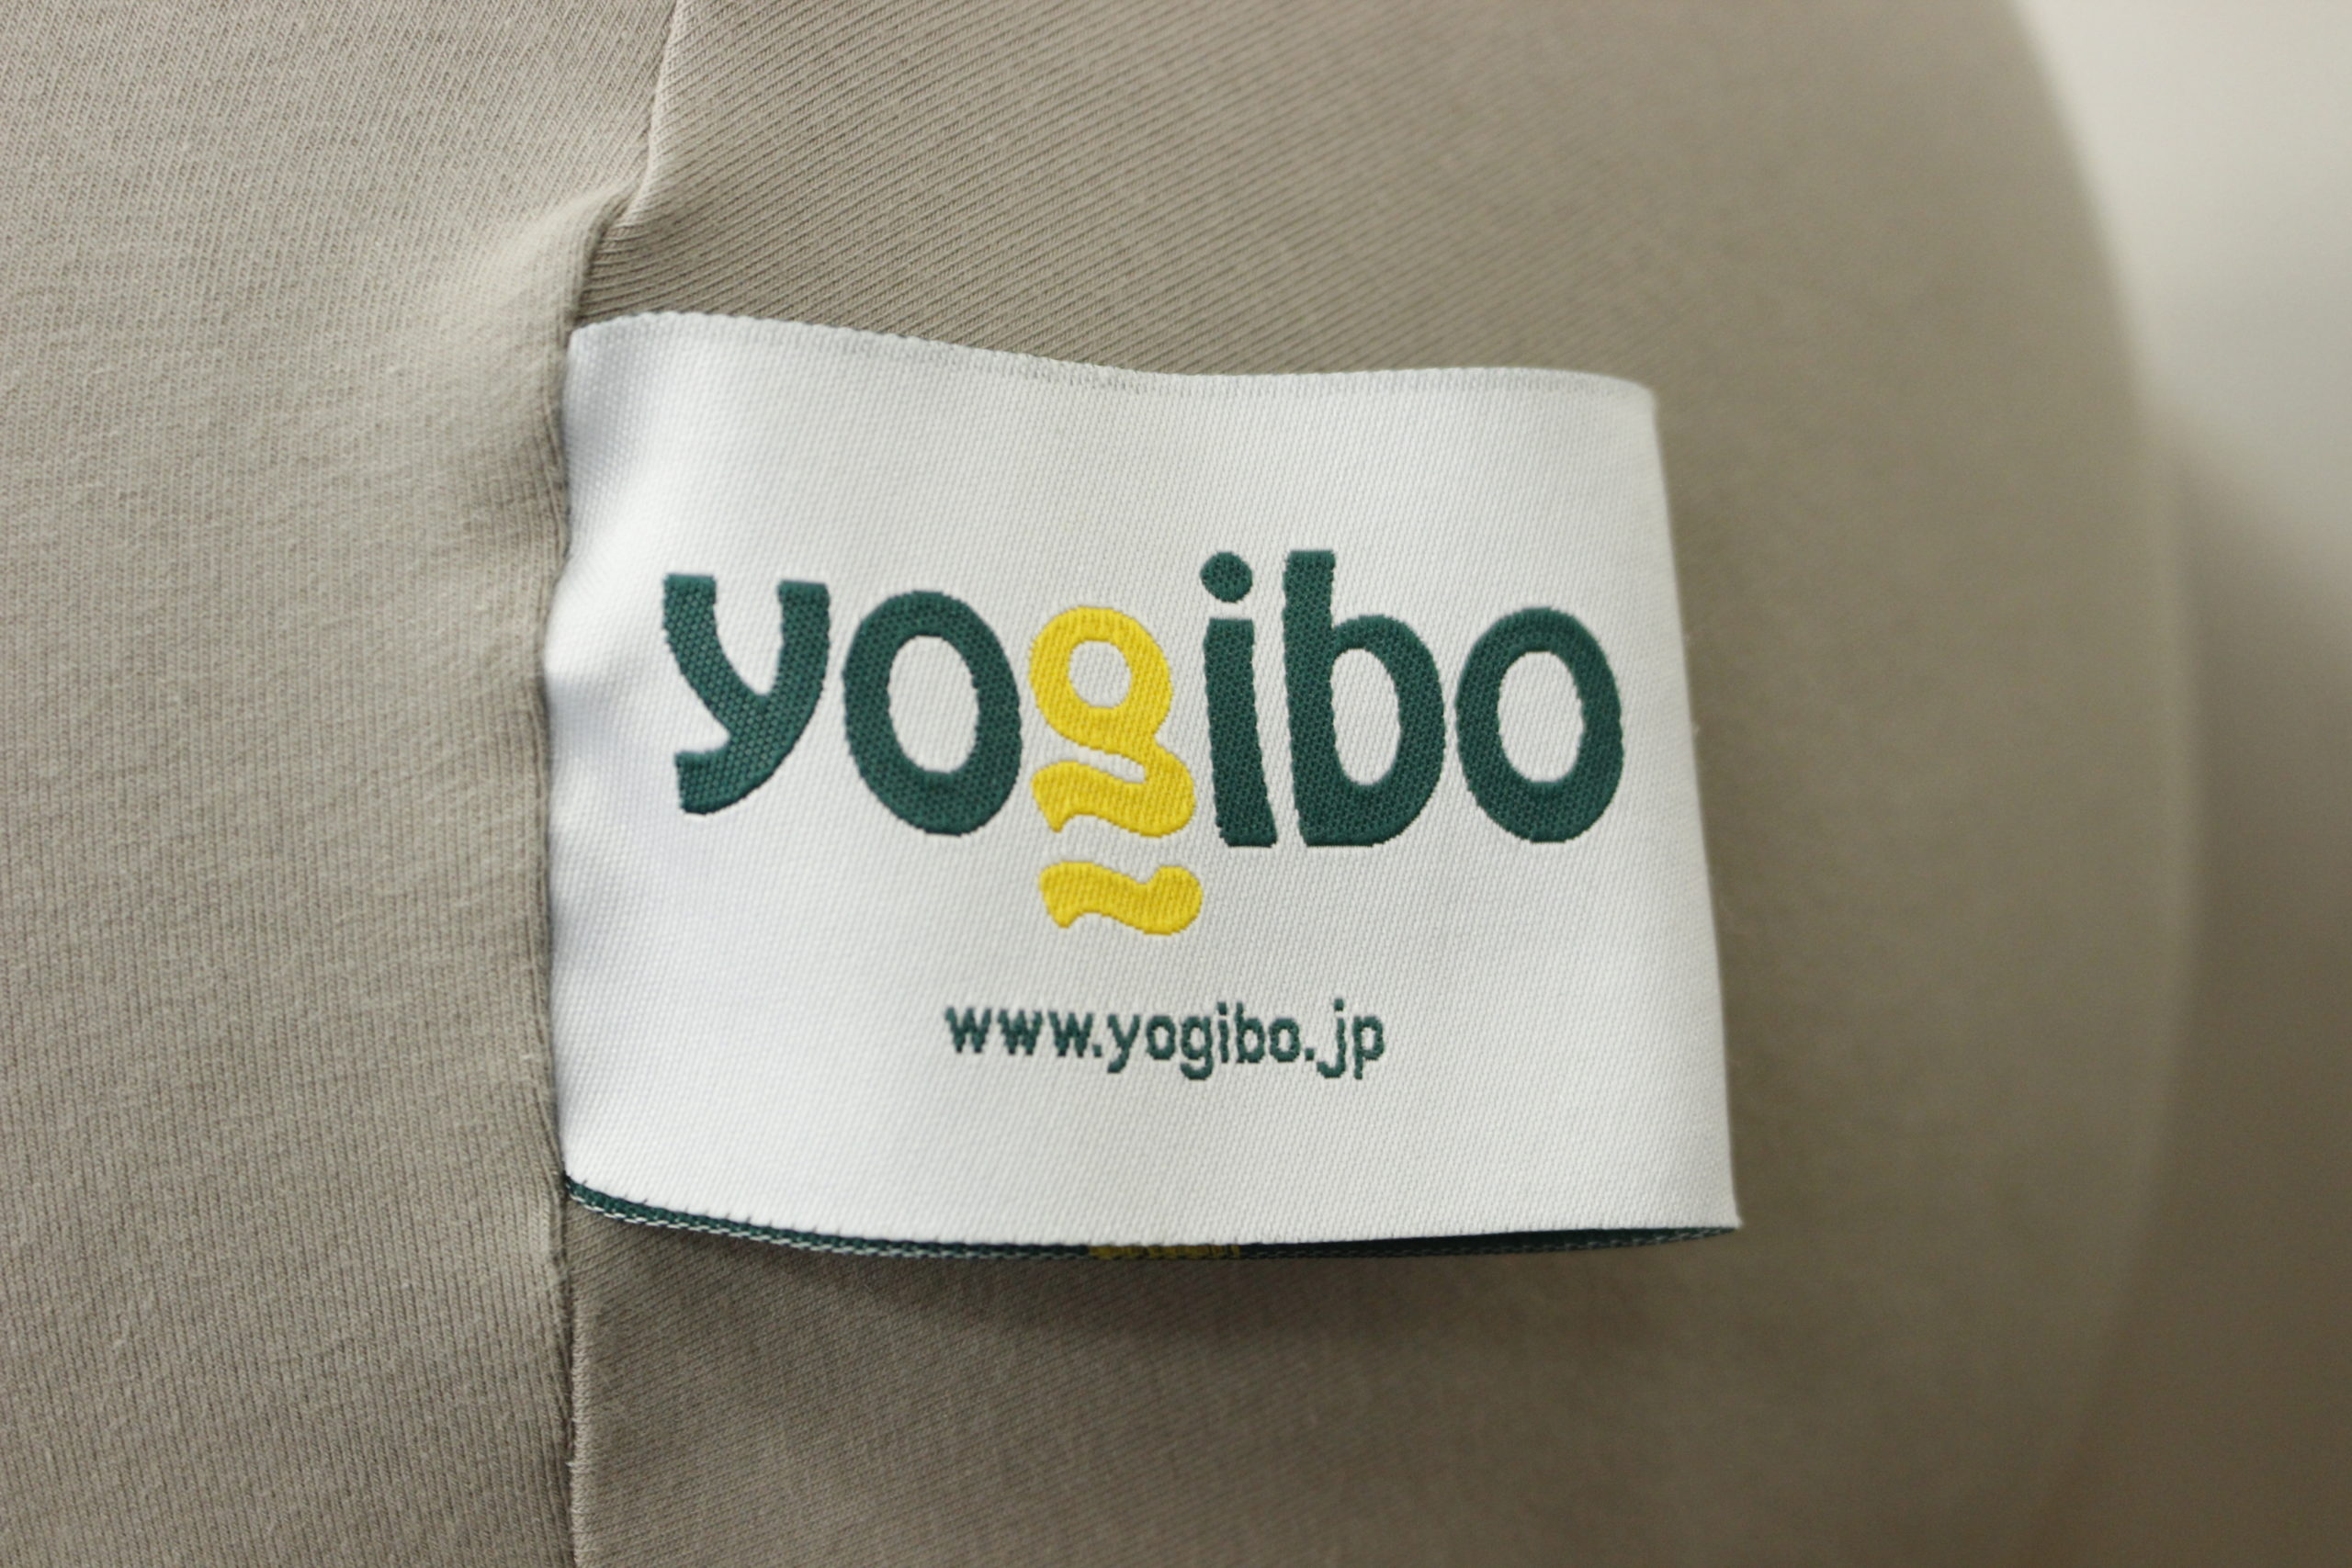 (福岡市南区)Yogibo / ヨギボー 抱き枕 ビーズ クッション 素敵な家具家電の買取お待ちしております♪ - リサイクルマートは現在冷蔵庫の買取、家具の買取強化中です！お気軽にお問い合わせください。